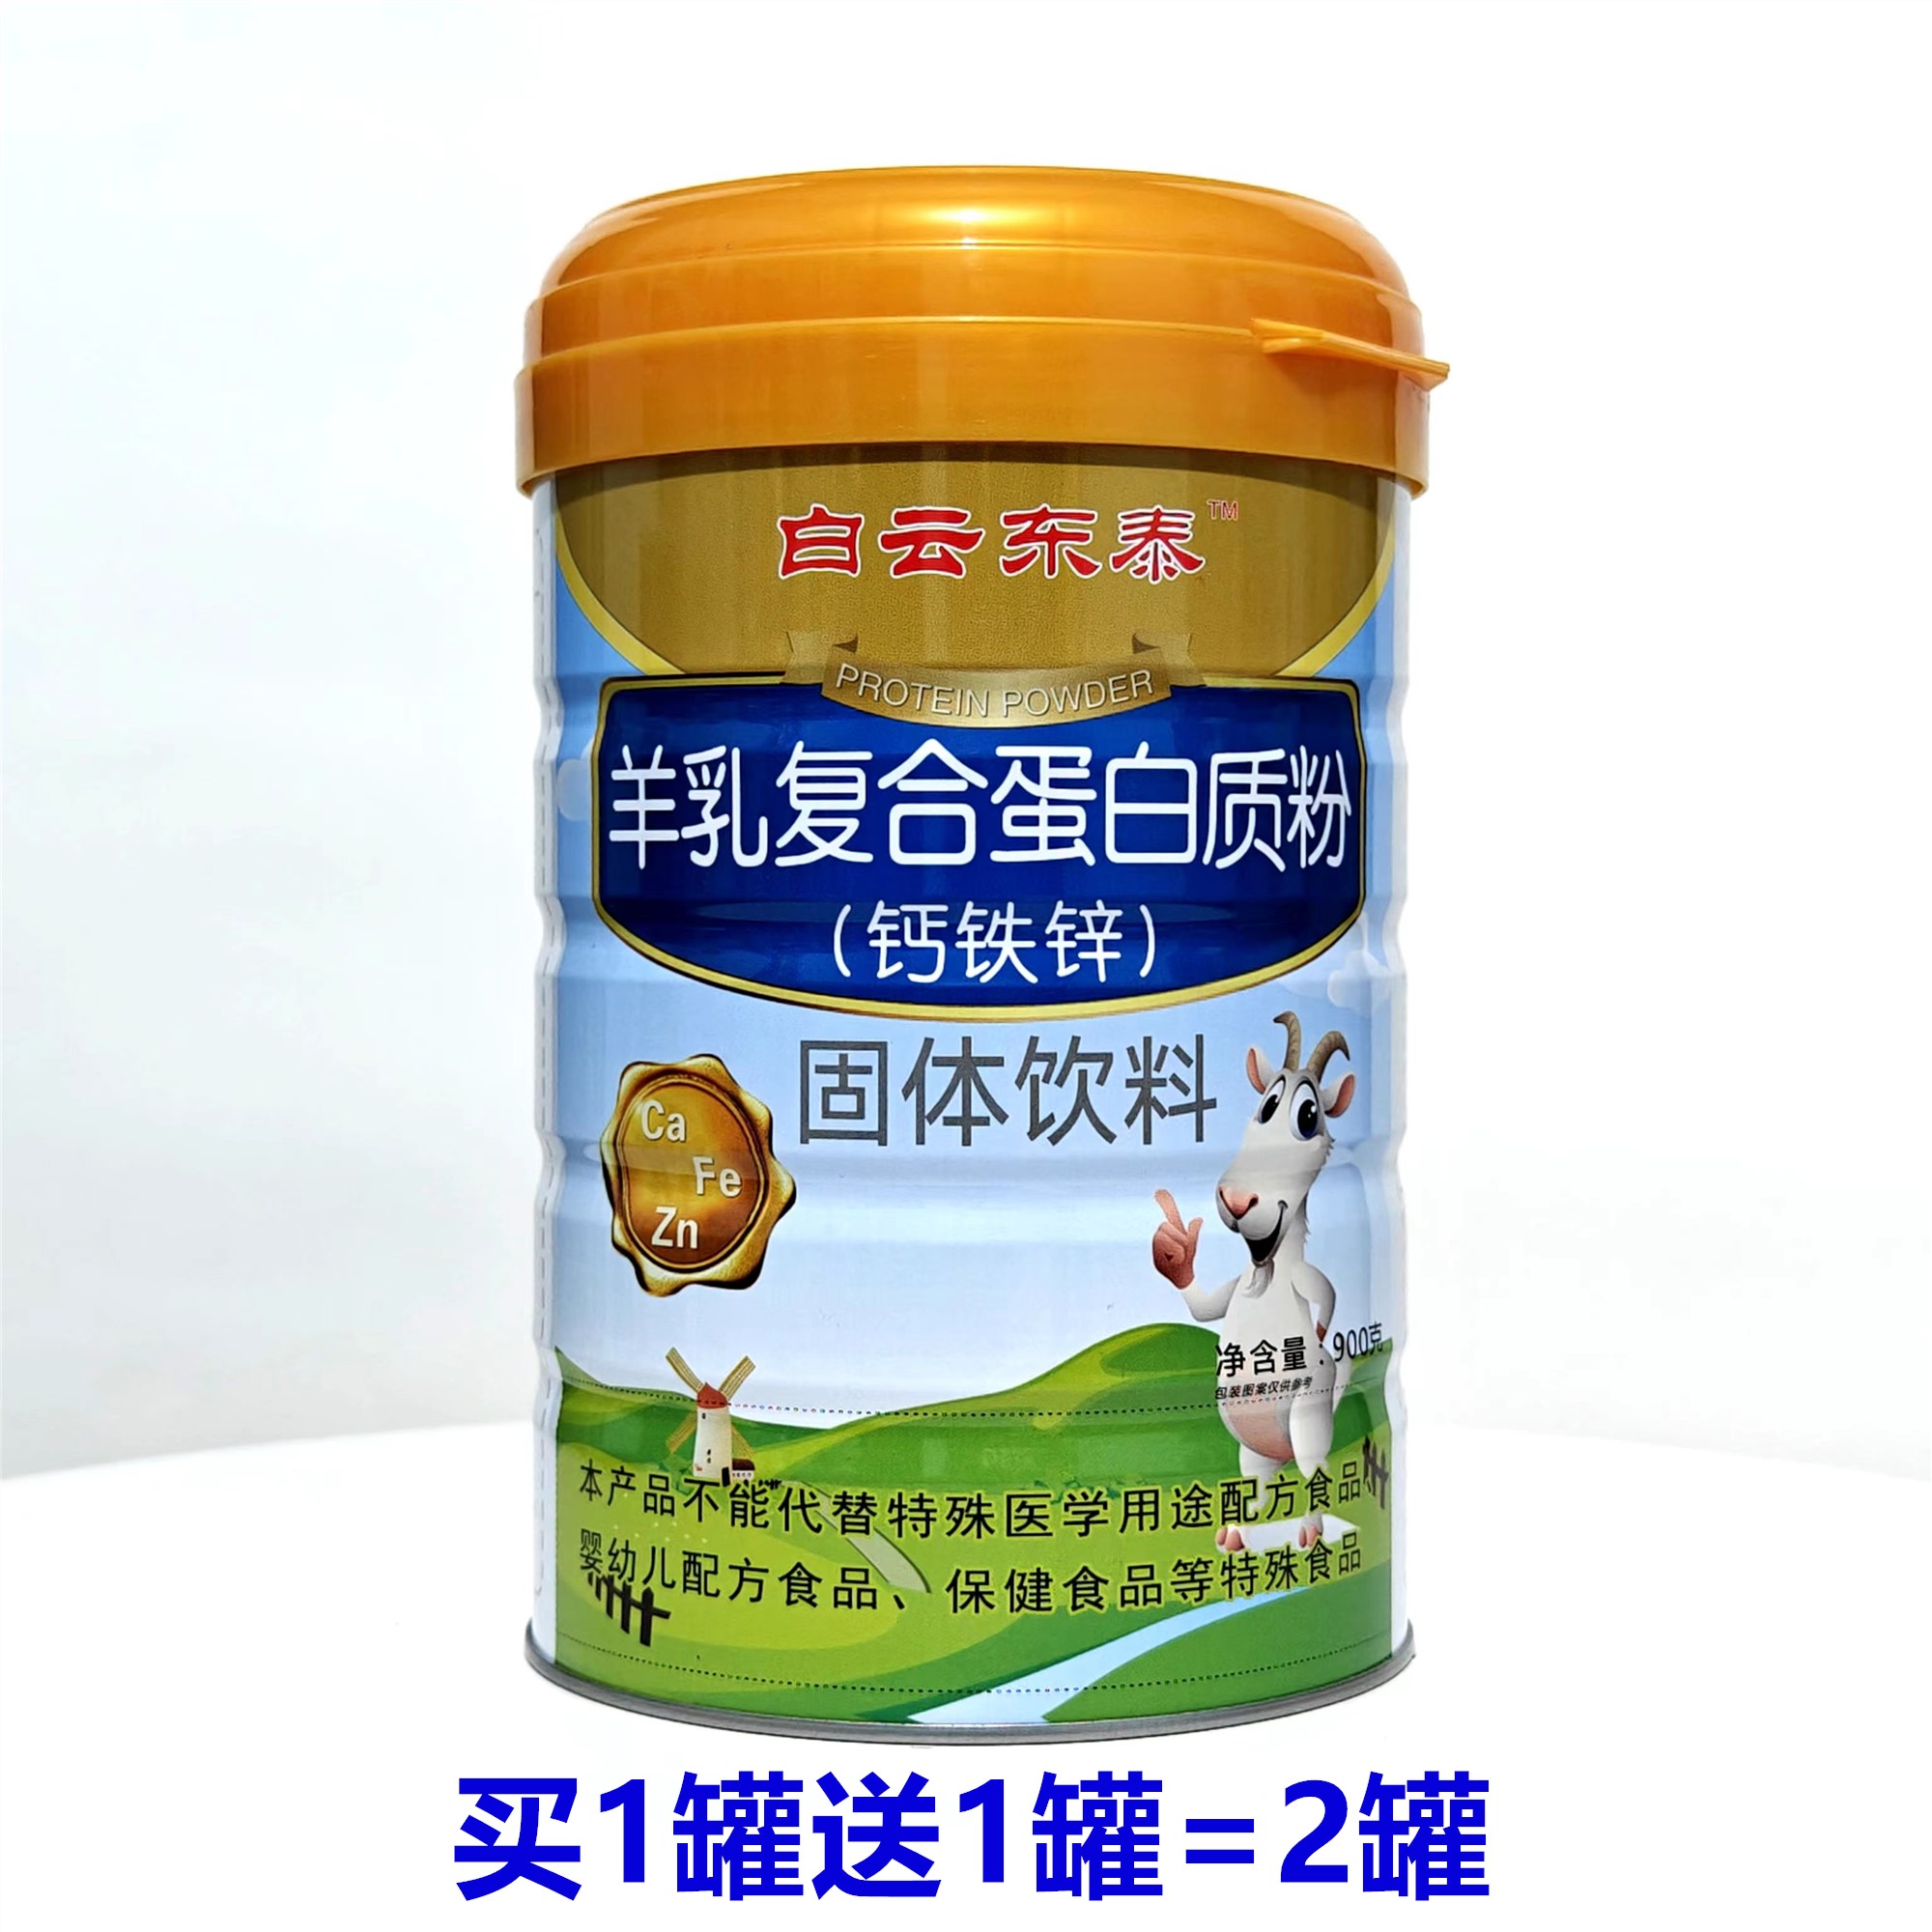 买1送1共2罐 白云山东泰羊乳蛋白质粉钙铁锌儿童中老年营养品